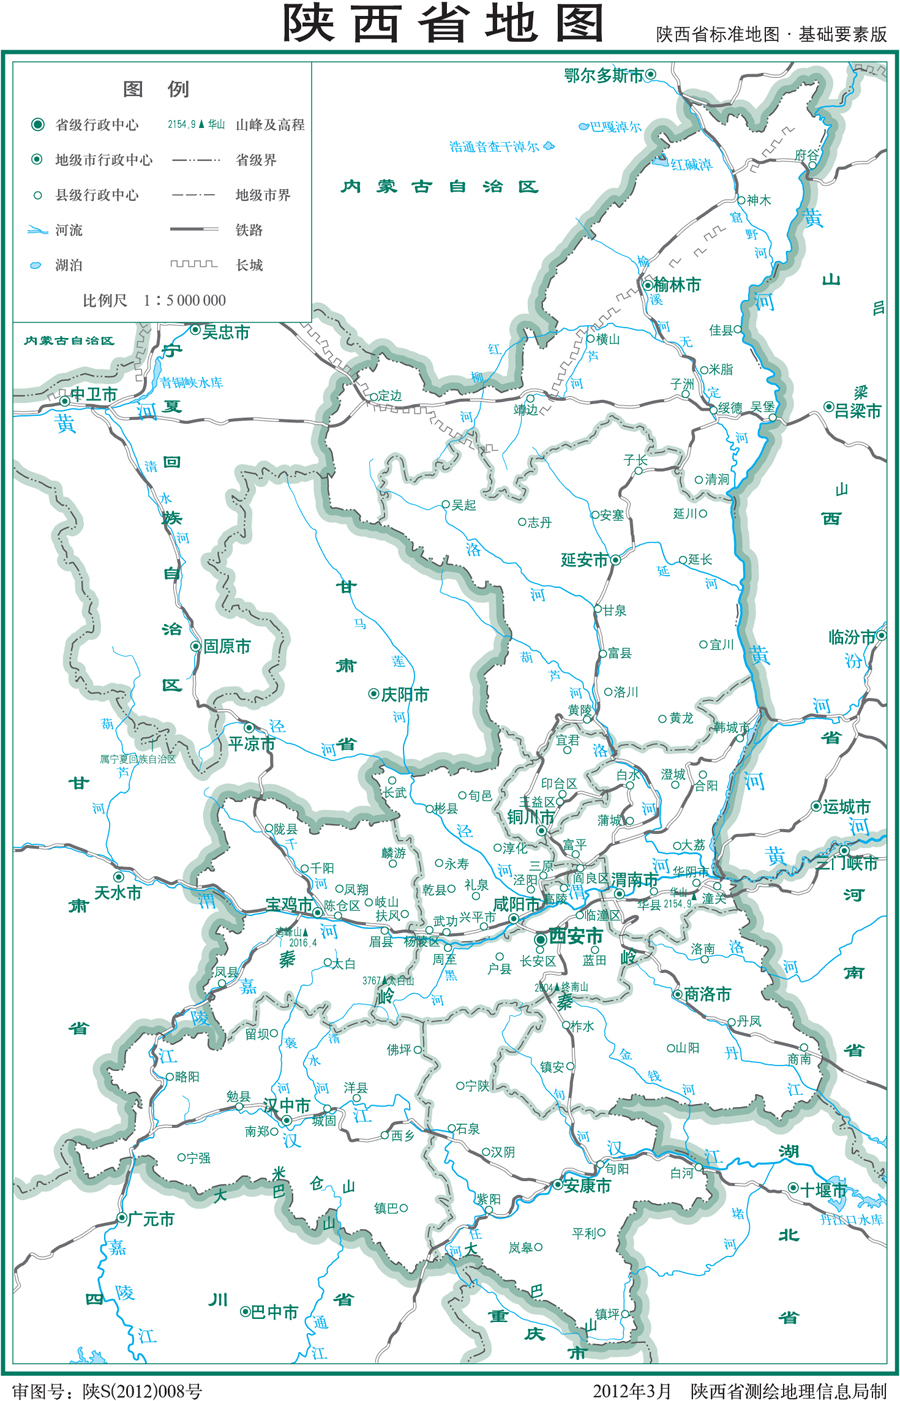 陕西省新版标准地图出炉 市民可免费浏览下载-搜狐滚动